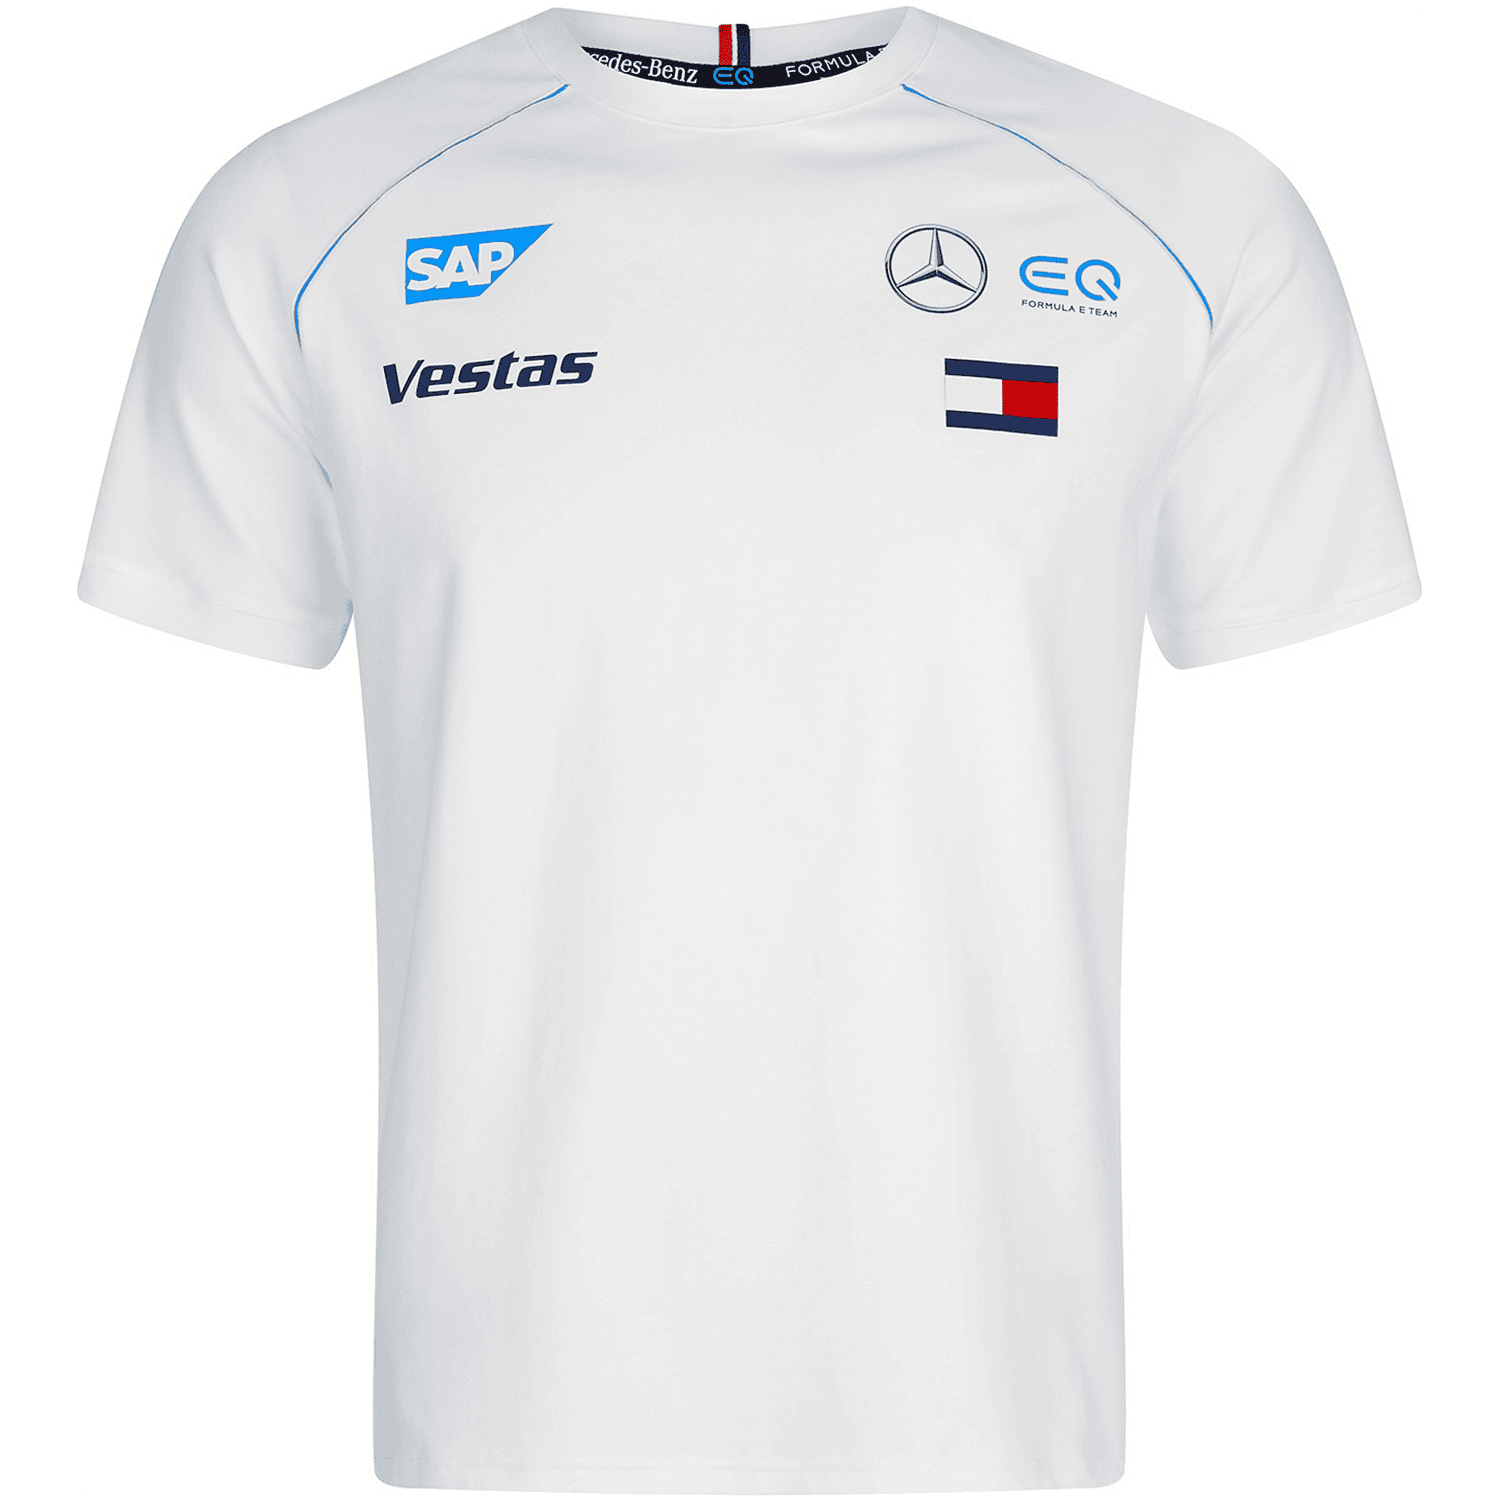 2020 Men's White Team T-Shirt